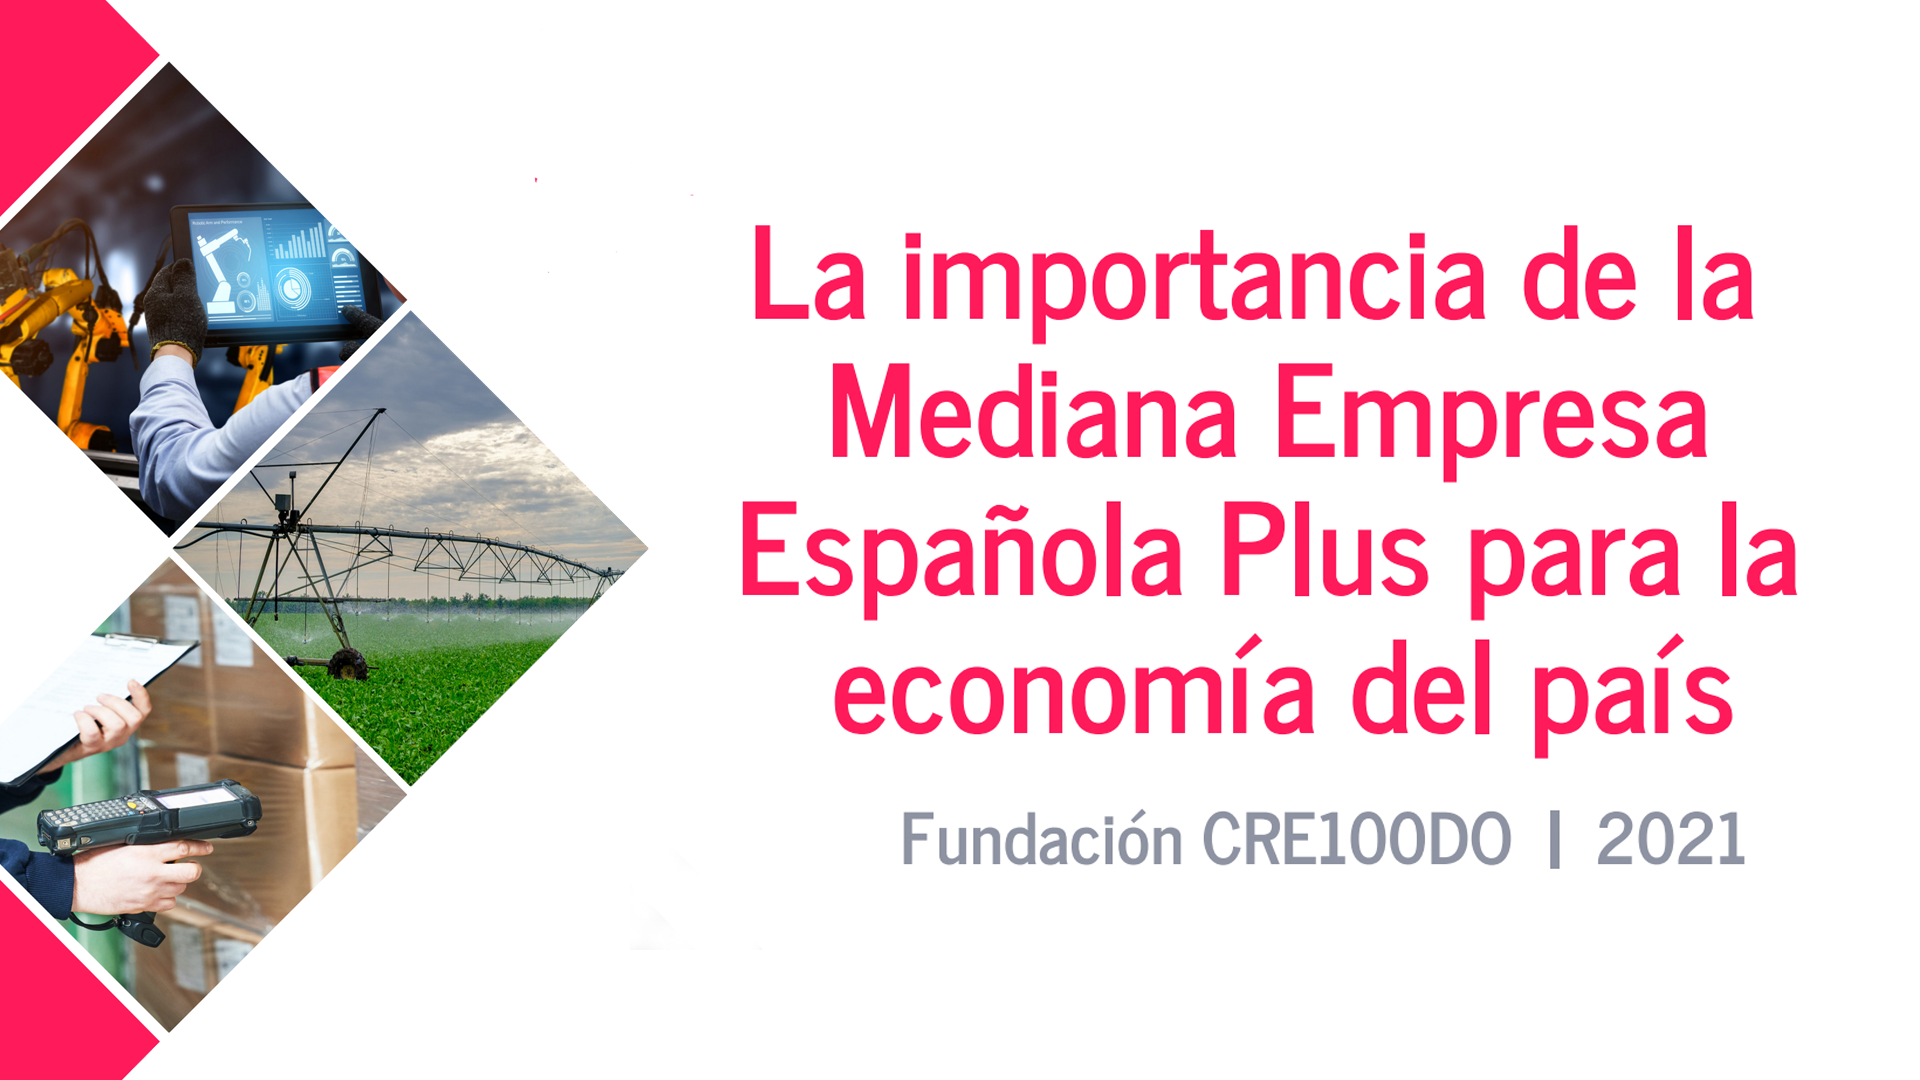 Informe Fundación CRE100DO – “La importancia de la Mediana Empresa Española Plus para la economía del país”